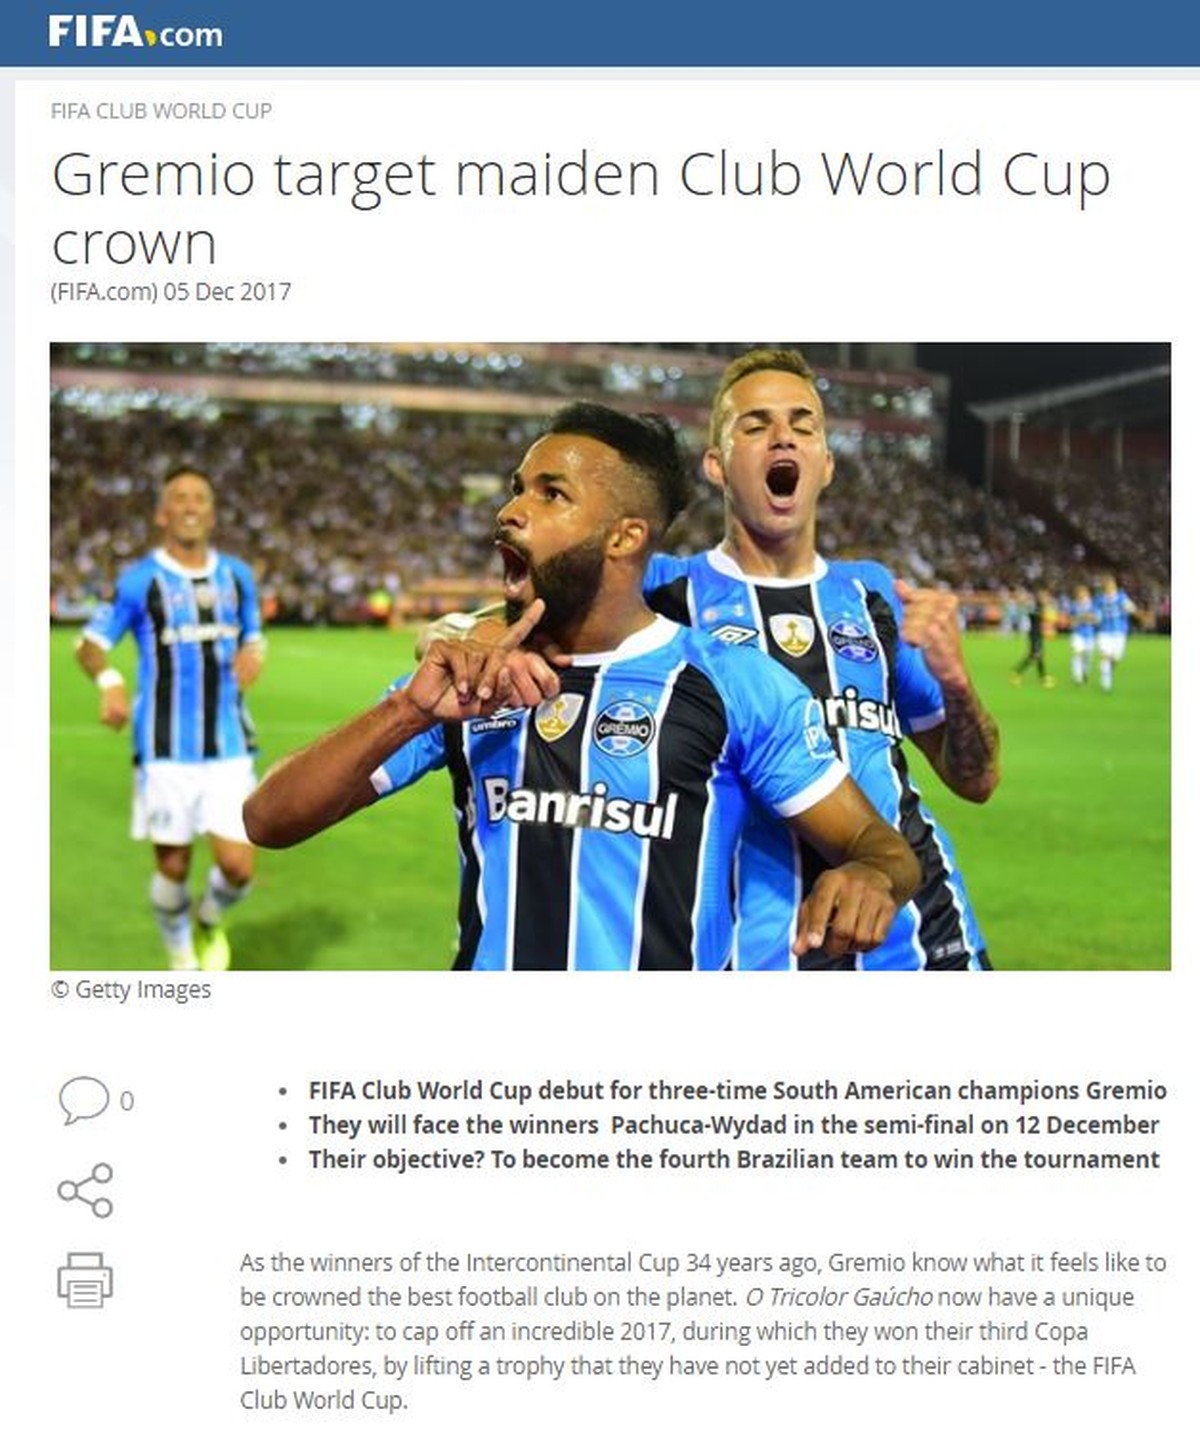 FIFA toma medida drástica e determina se o Grêmio tem Mundial